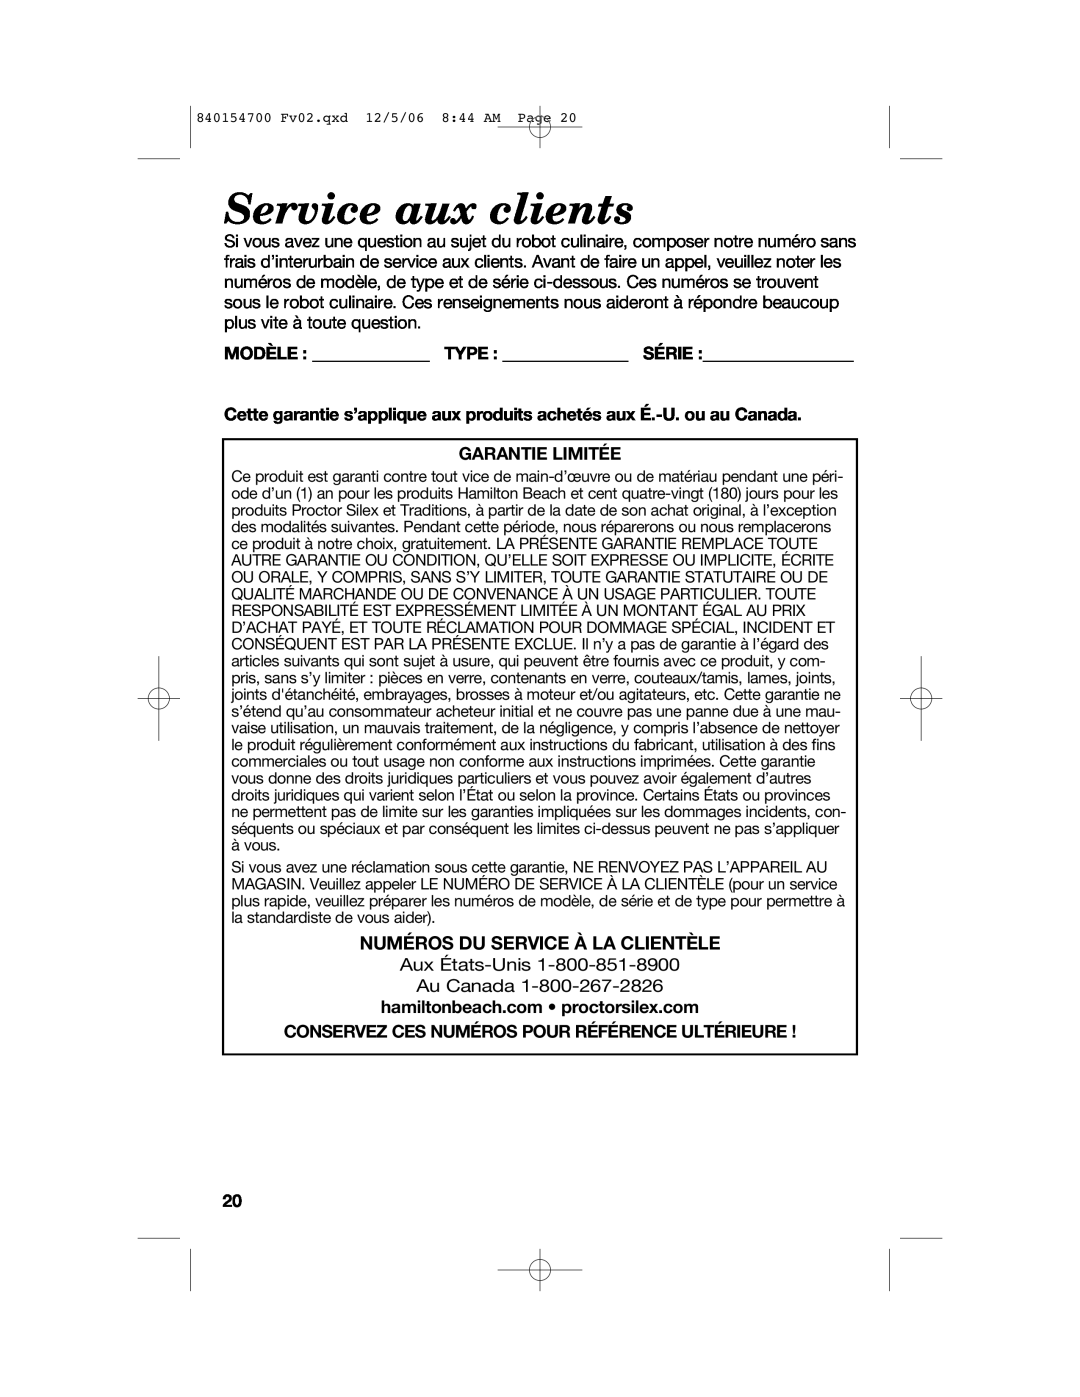 Hamilton Beach 70610C manual Service aux clients, Numéros Du Service À La Clientèle 